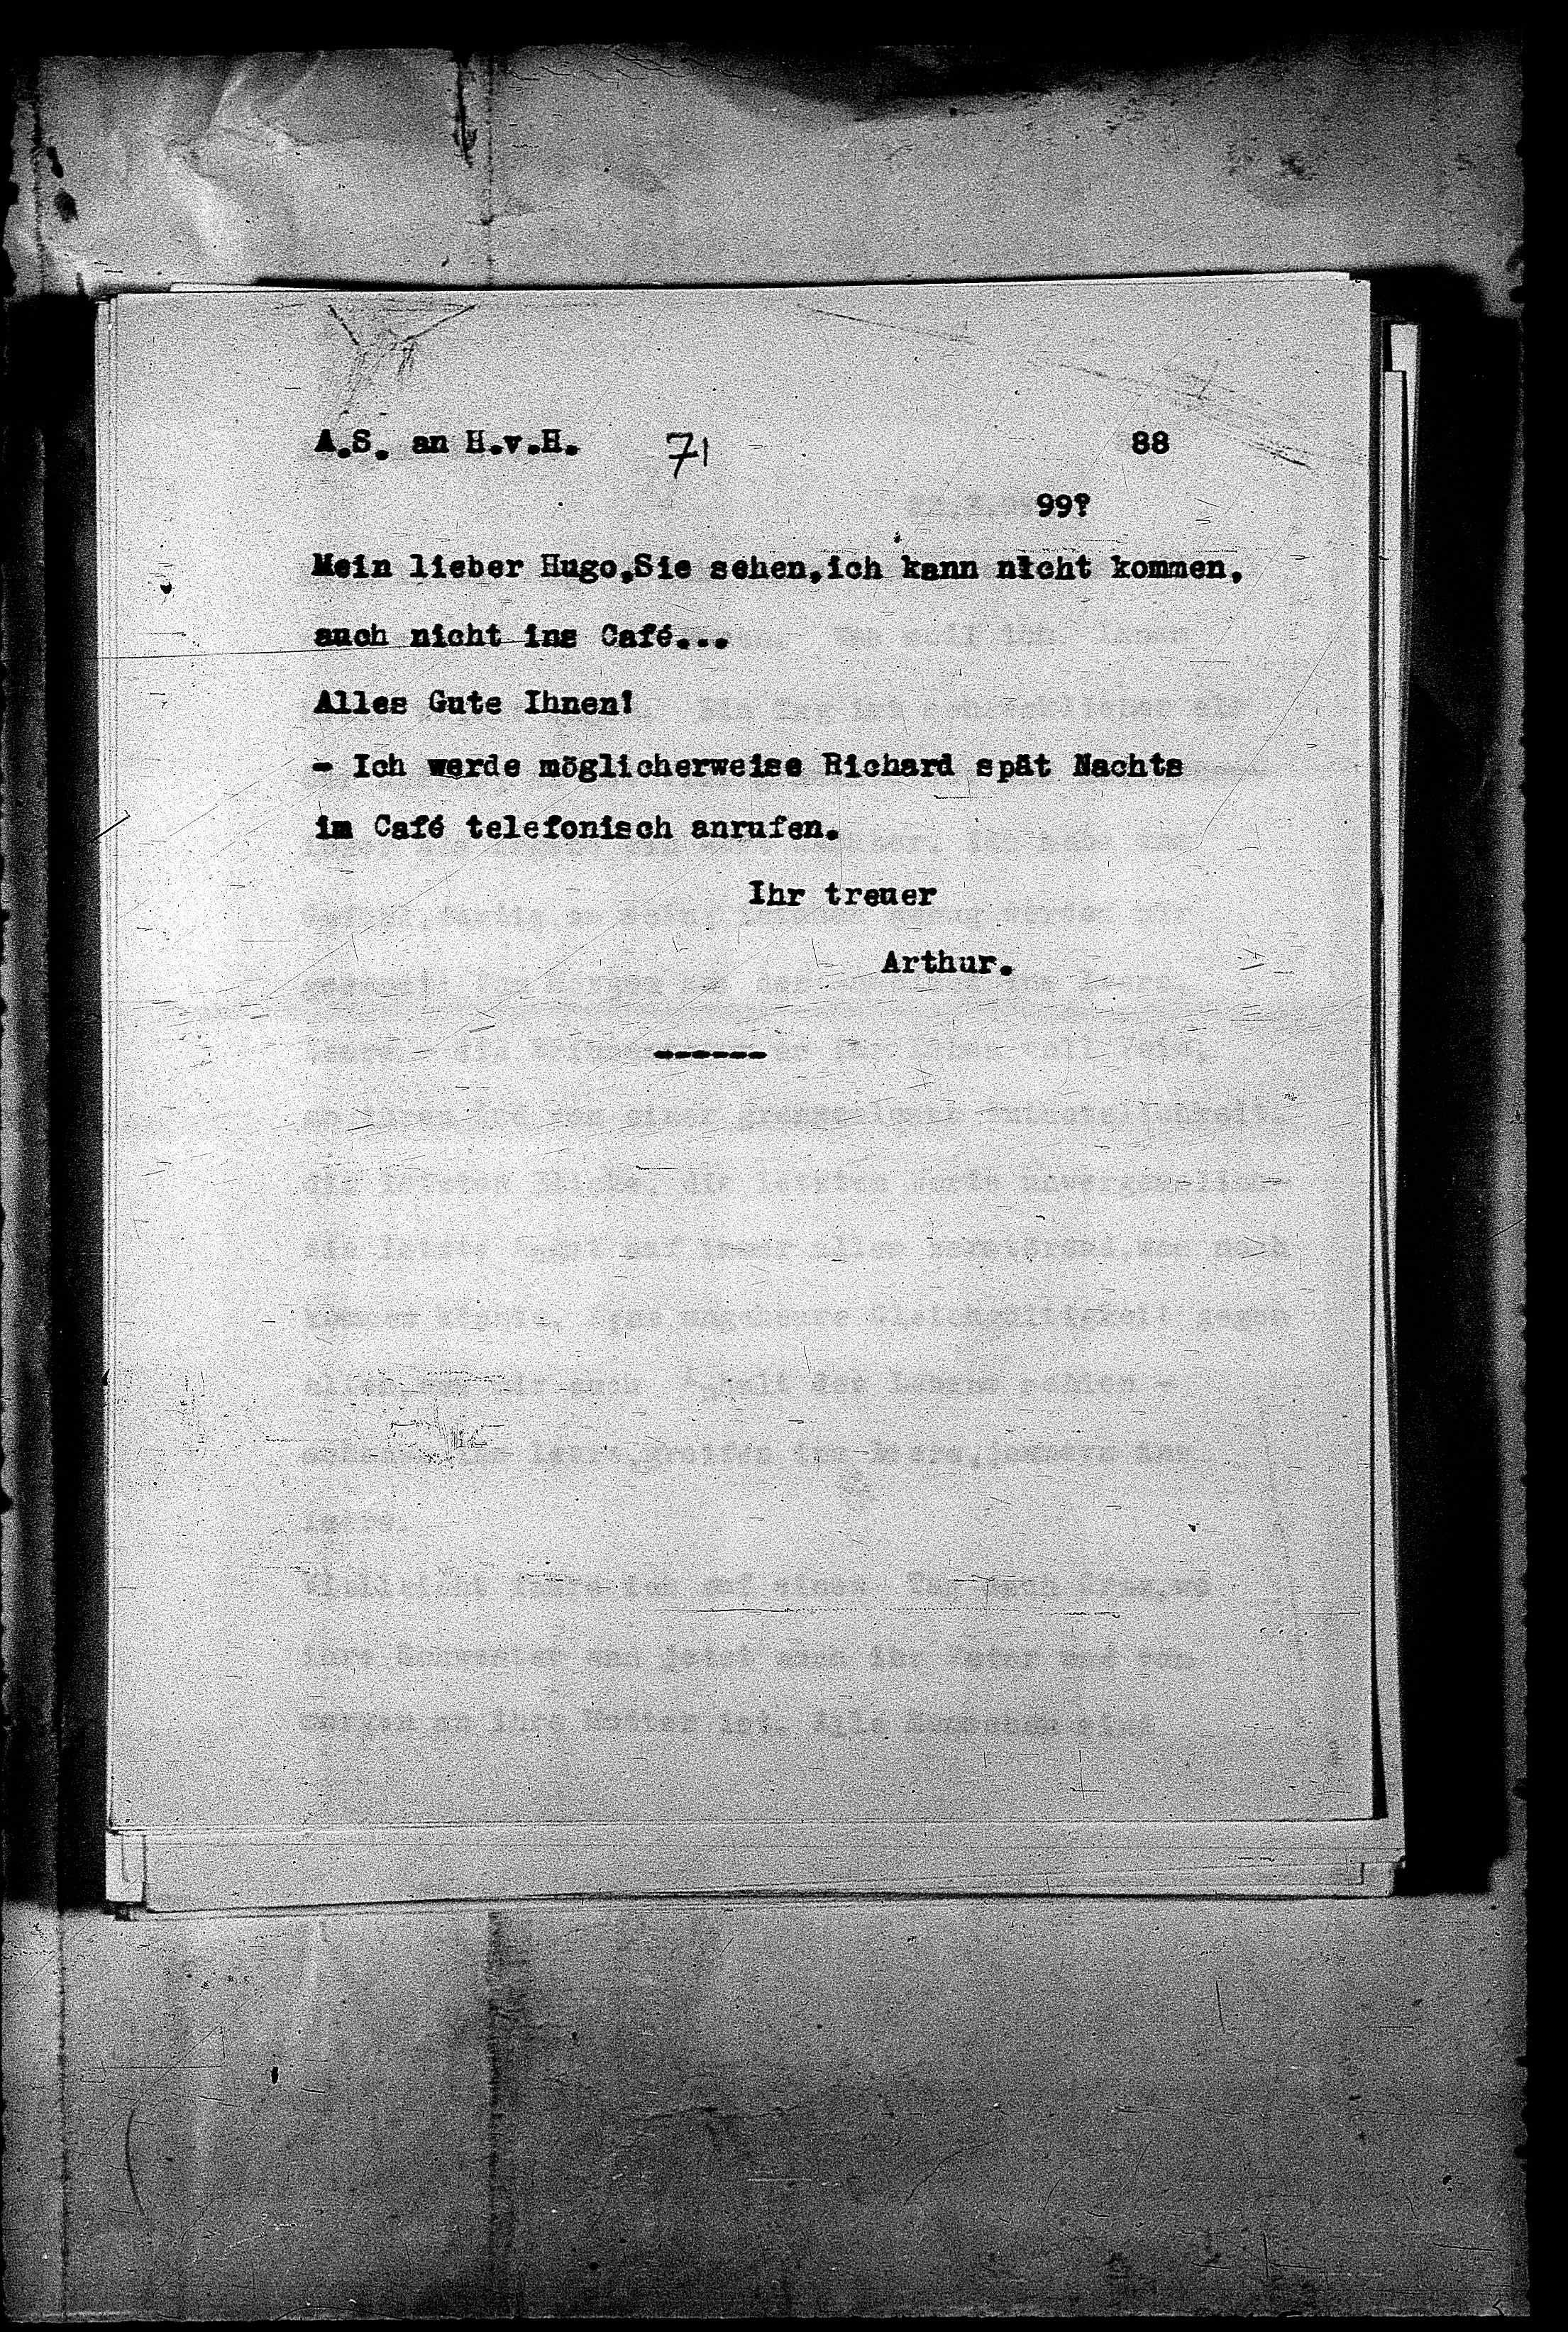 Vorschaubild für Hofmannsthal, Hugo von_AS an HvH Abschrift, HvH an AS, Originale (Mikrofilm 38), Seite 92